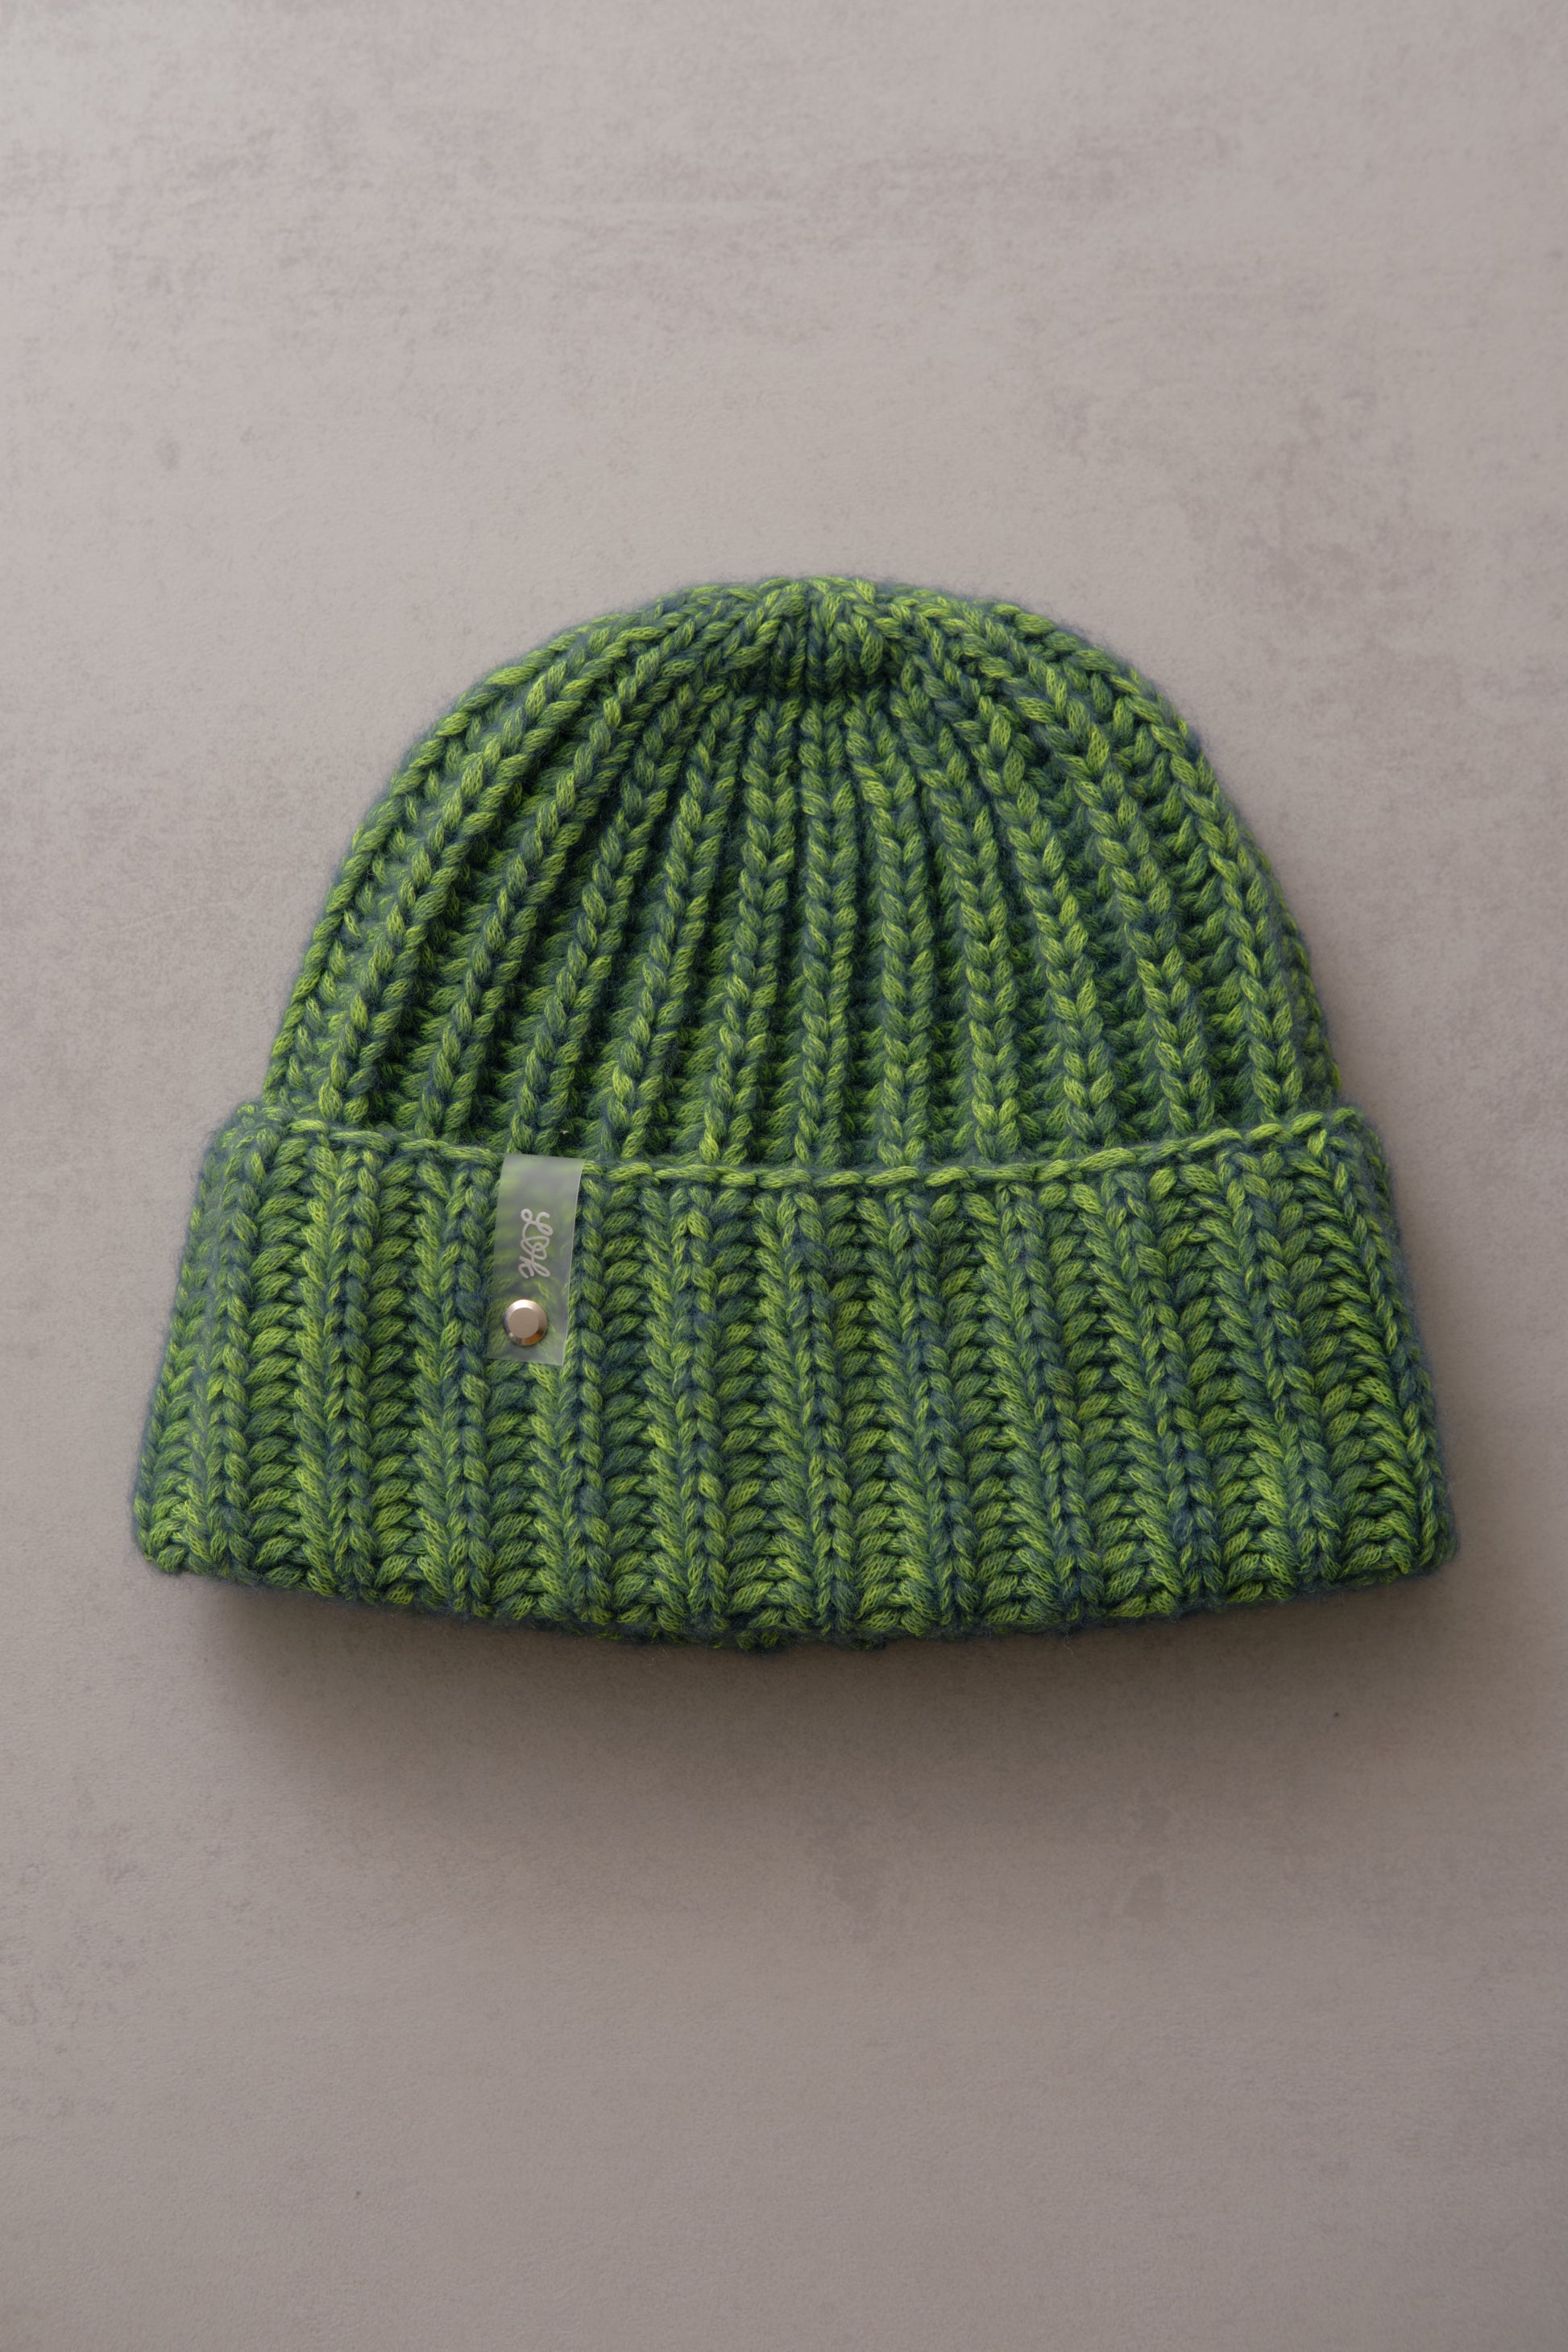 hat in neon lenalovesknitting colors Hand-knitted –